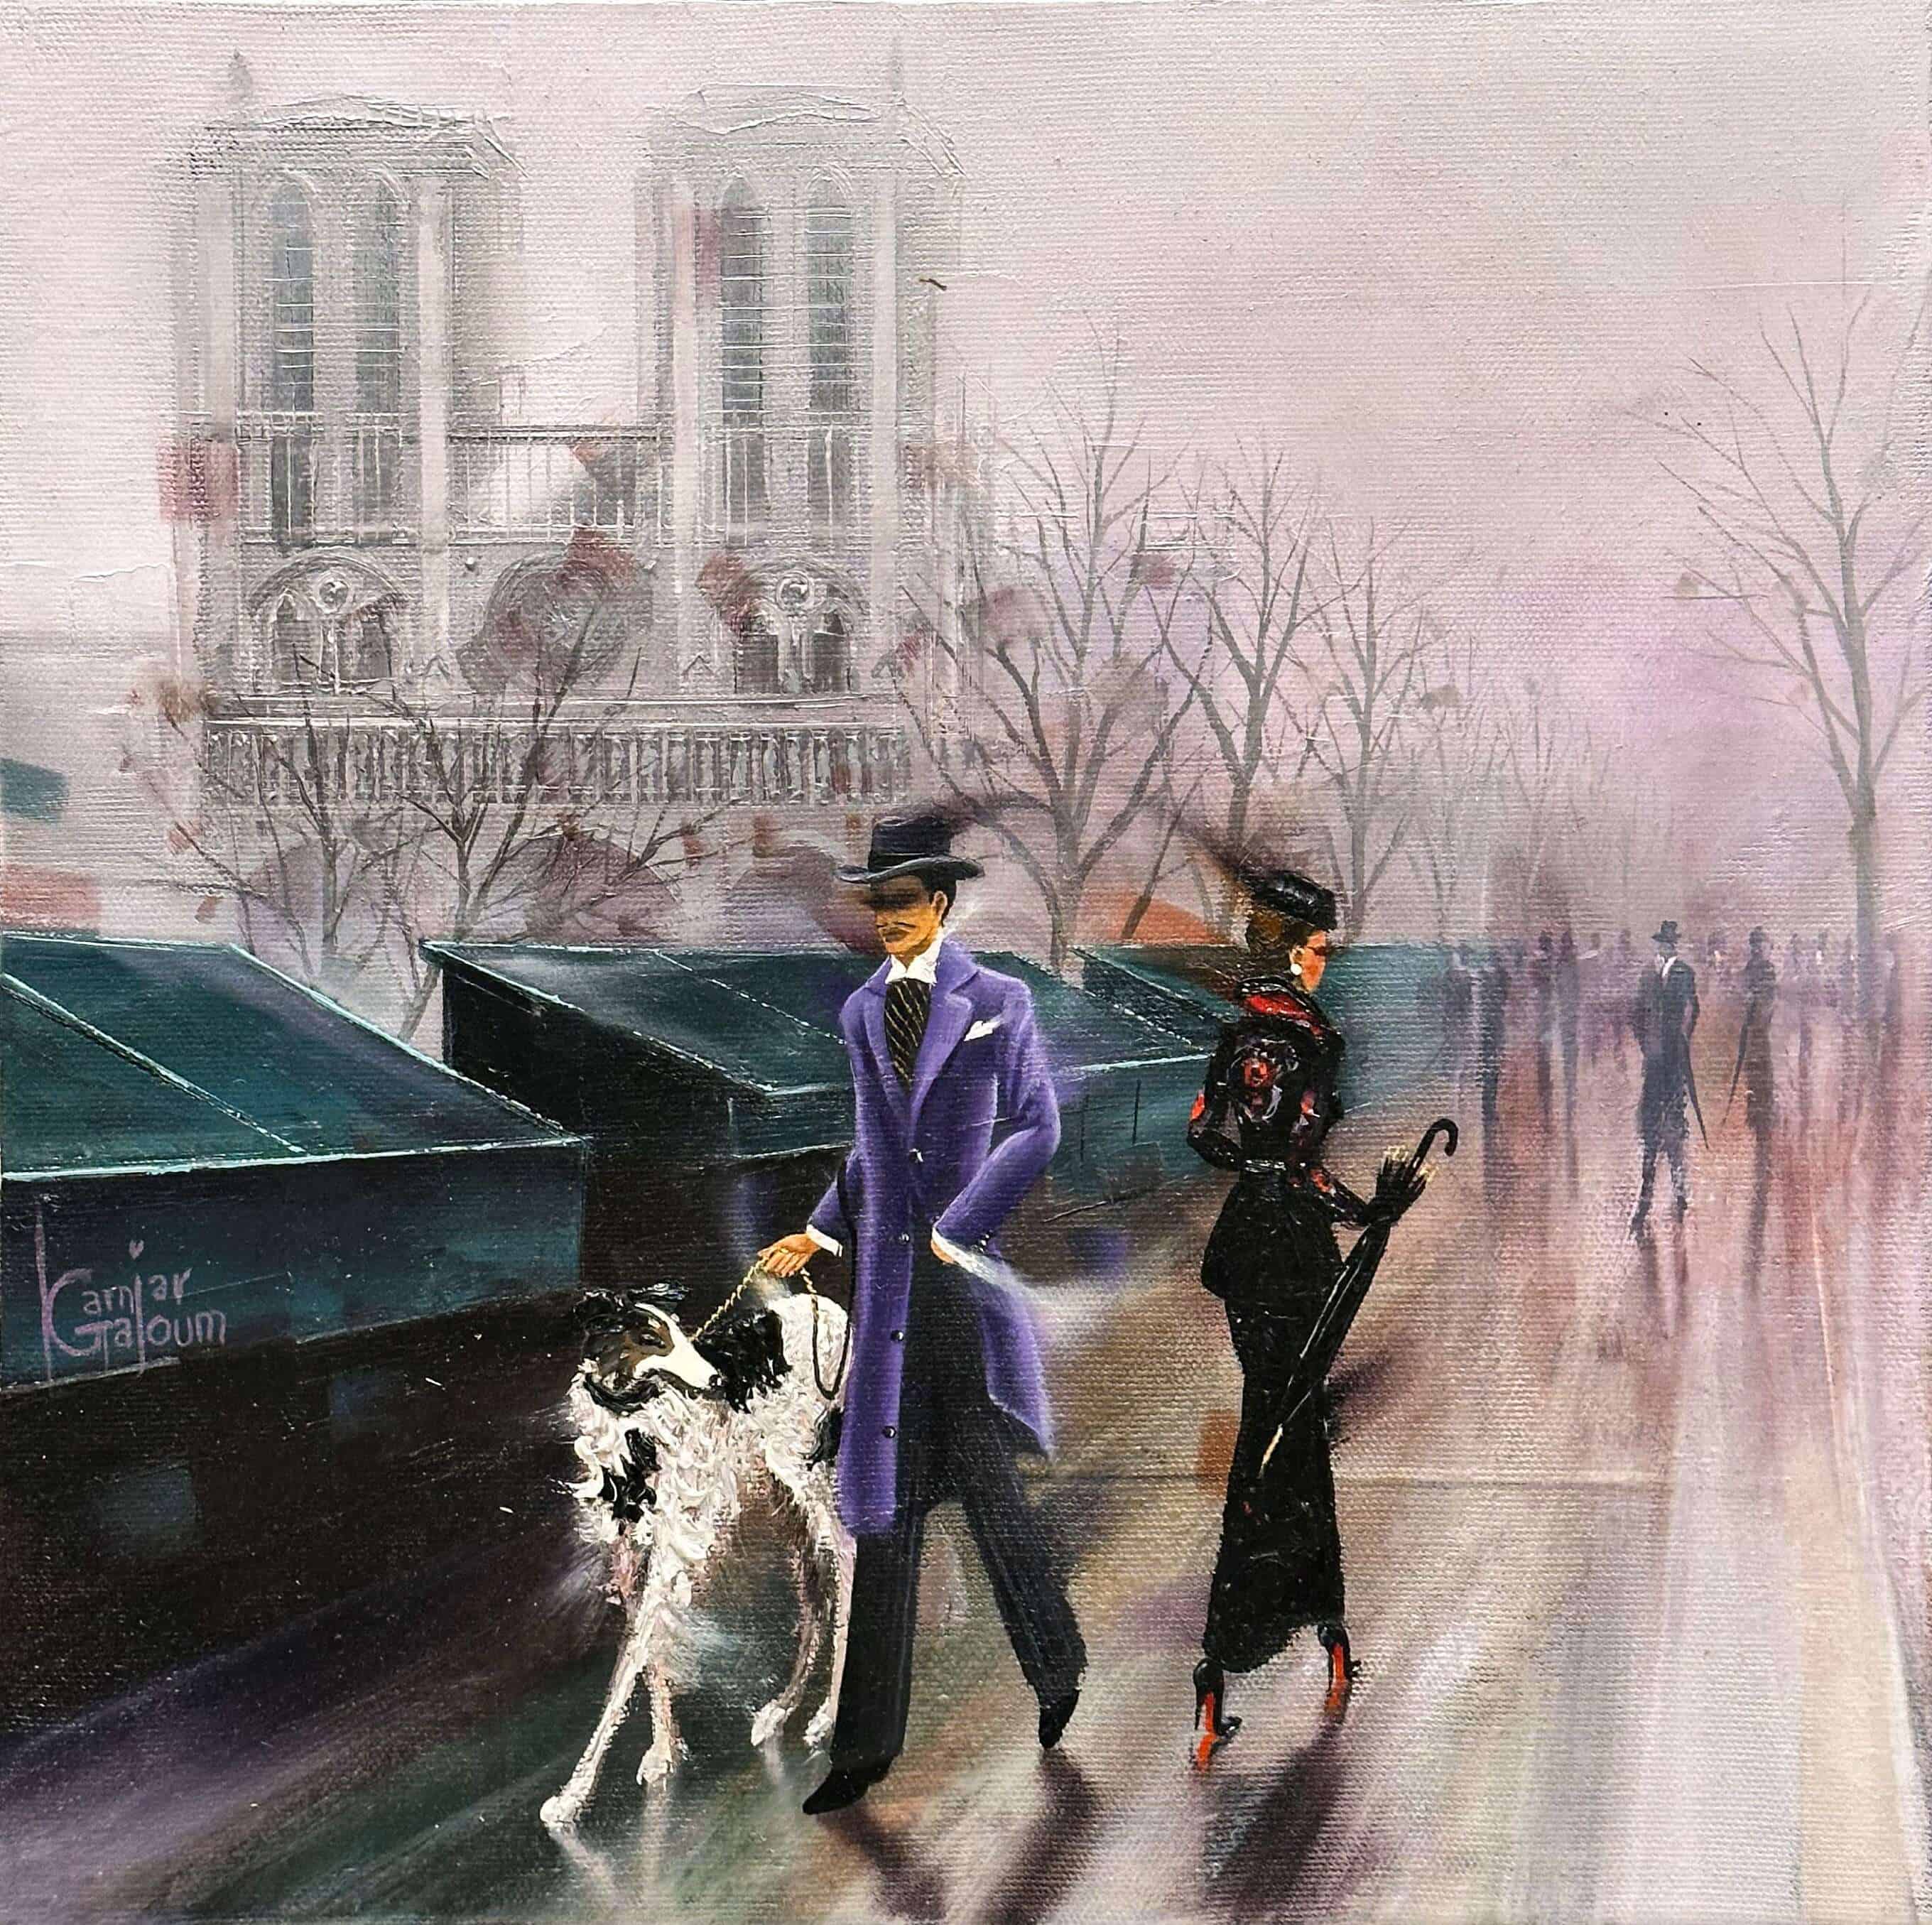 Contemporary Art. Title: Saint-Germain-des-Prés, Oil on Canvas, 12 x 12 in by Canadian Artist Kamiar Gajoum.